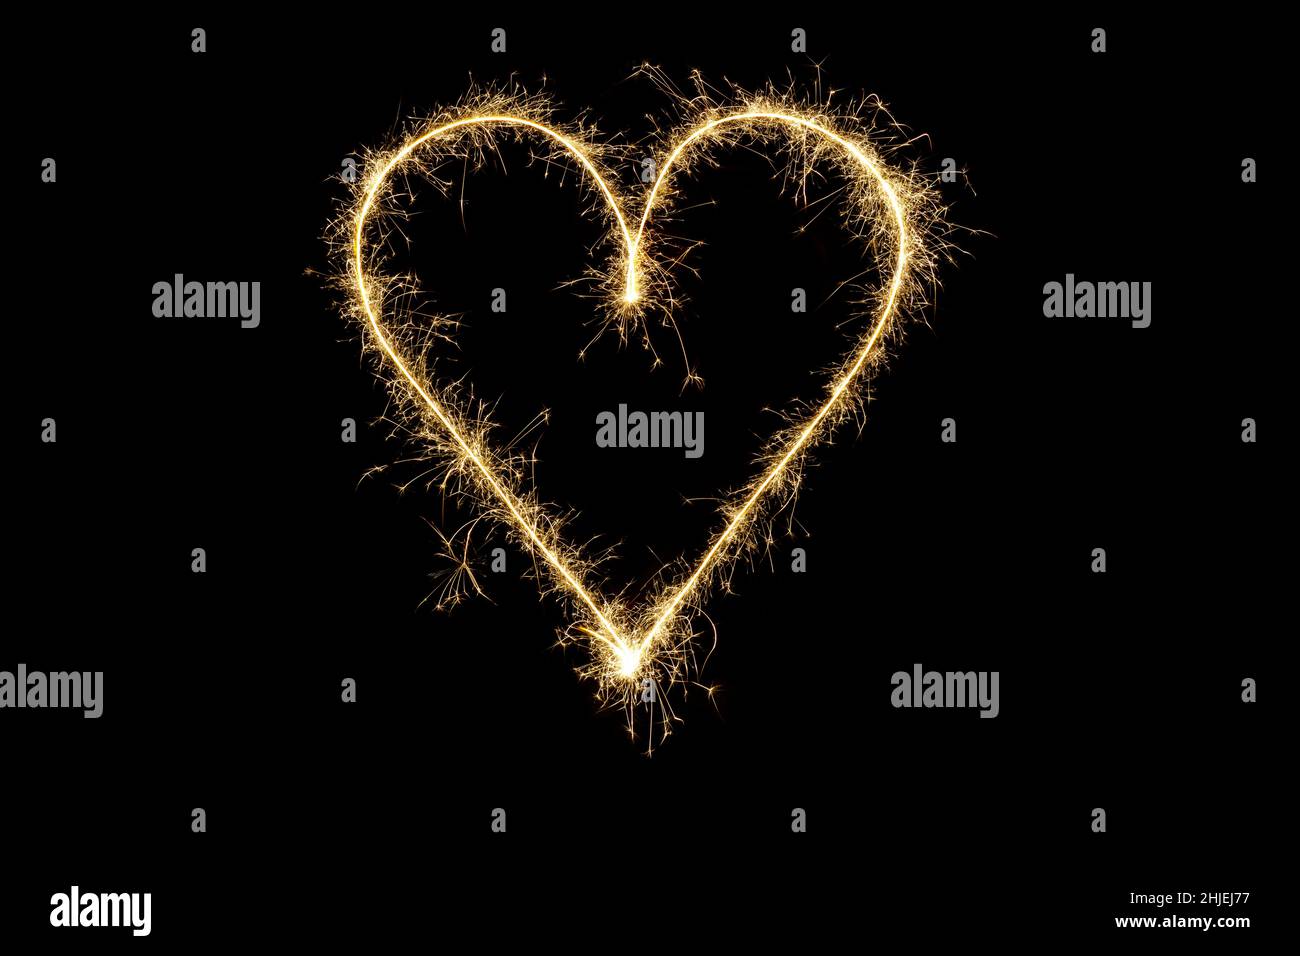 Forme de coeur en étincelles.Symbole d'amour de la Saint-Valentin, coeur lumineux sur fond noir Banque D'Images